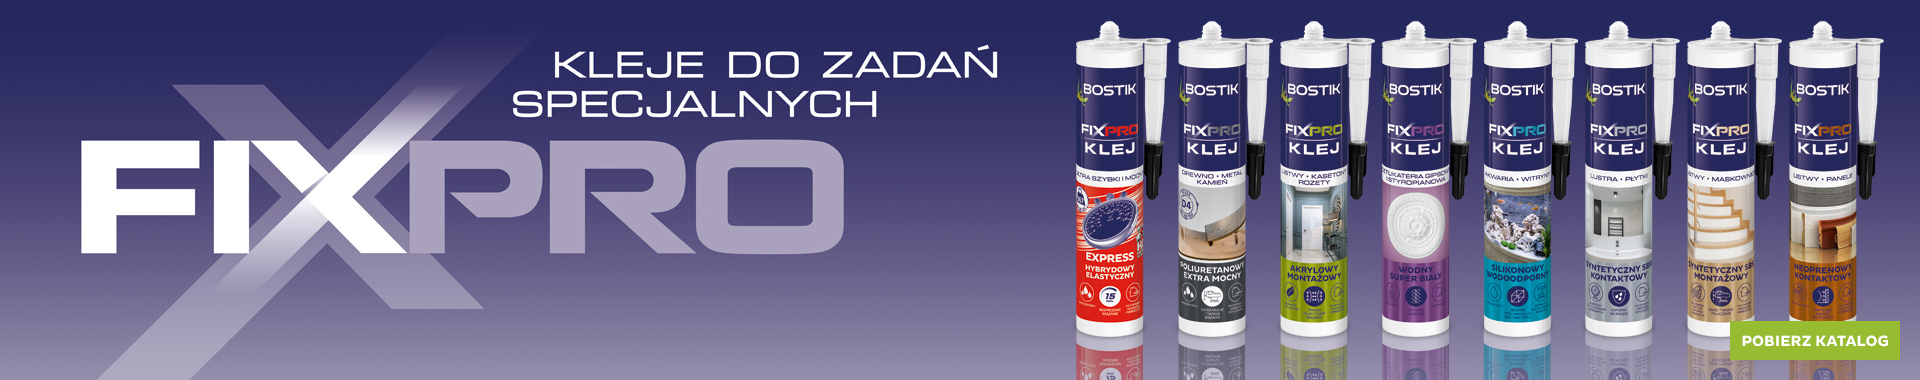 Bostik DIY Poland Fixpro range banner image